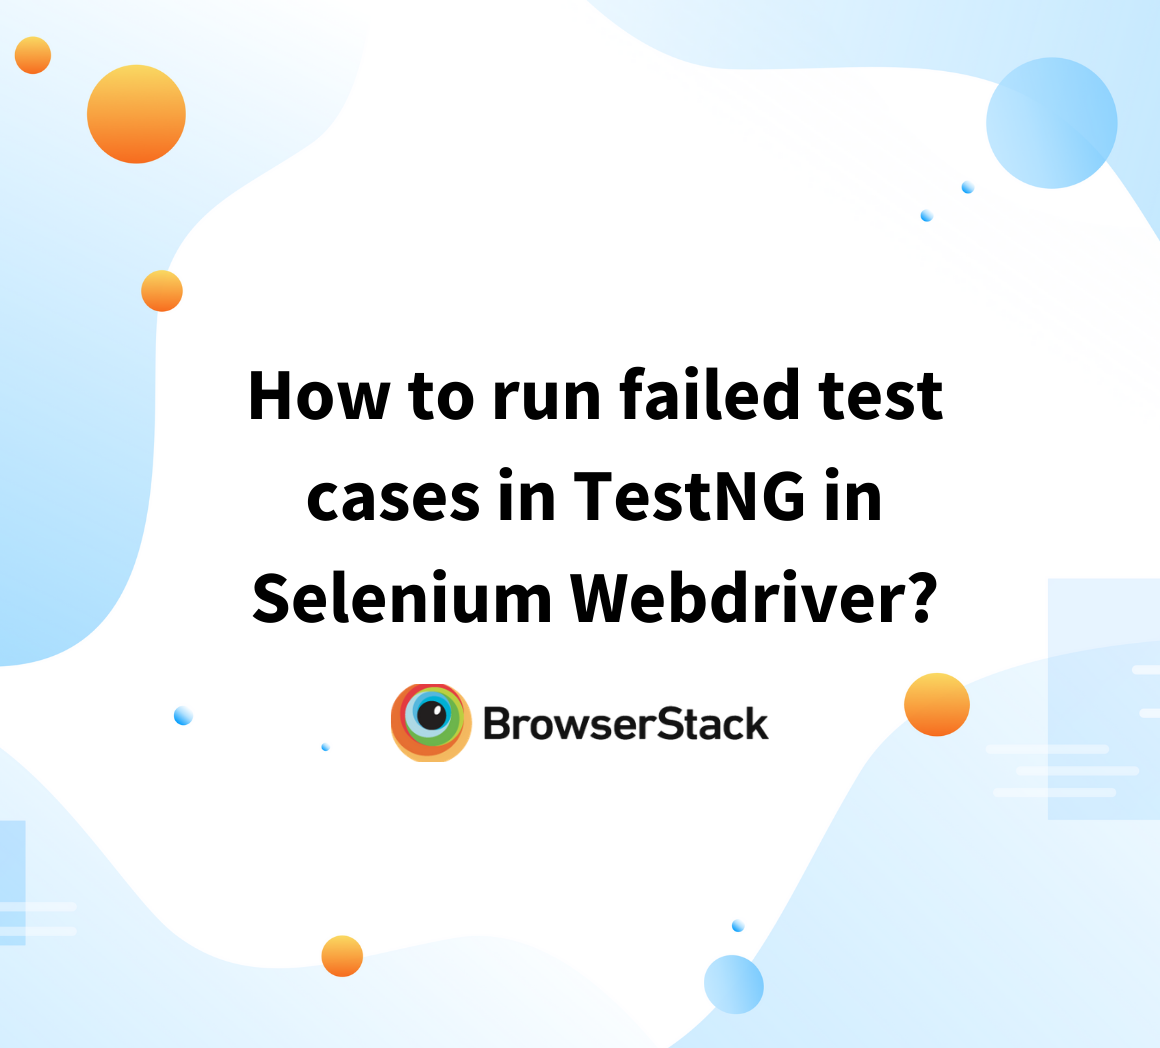 Run failed test cases in Selenium